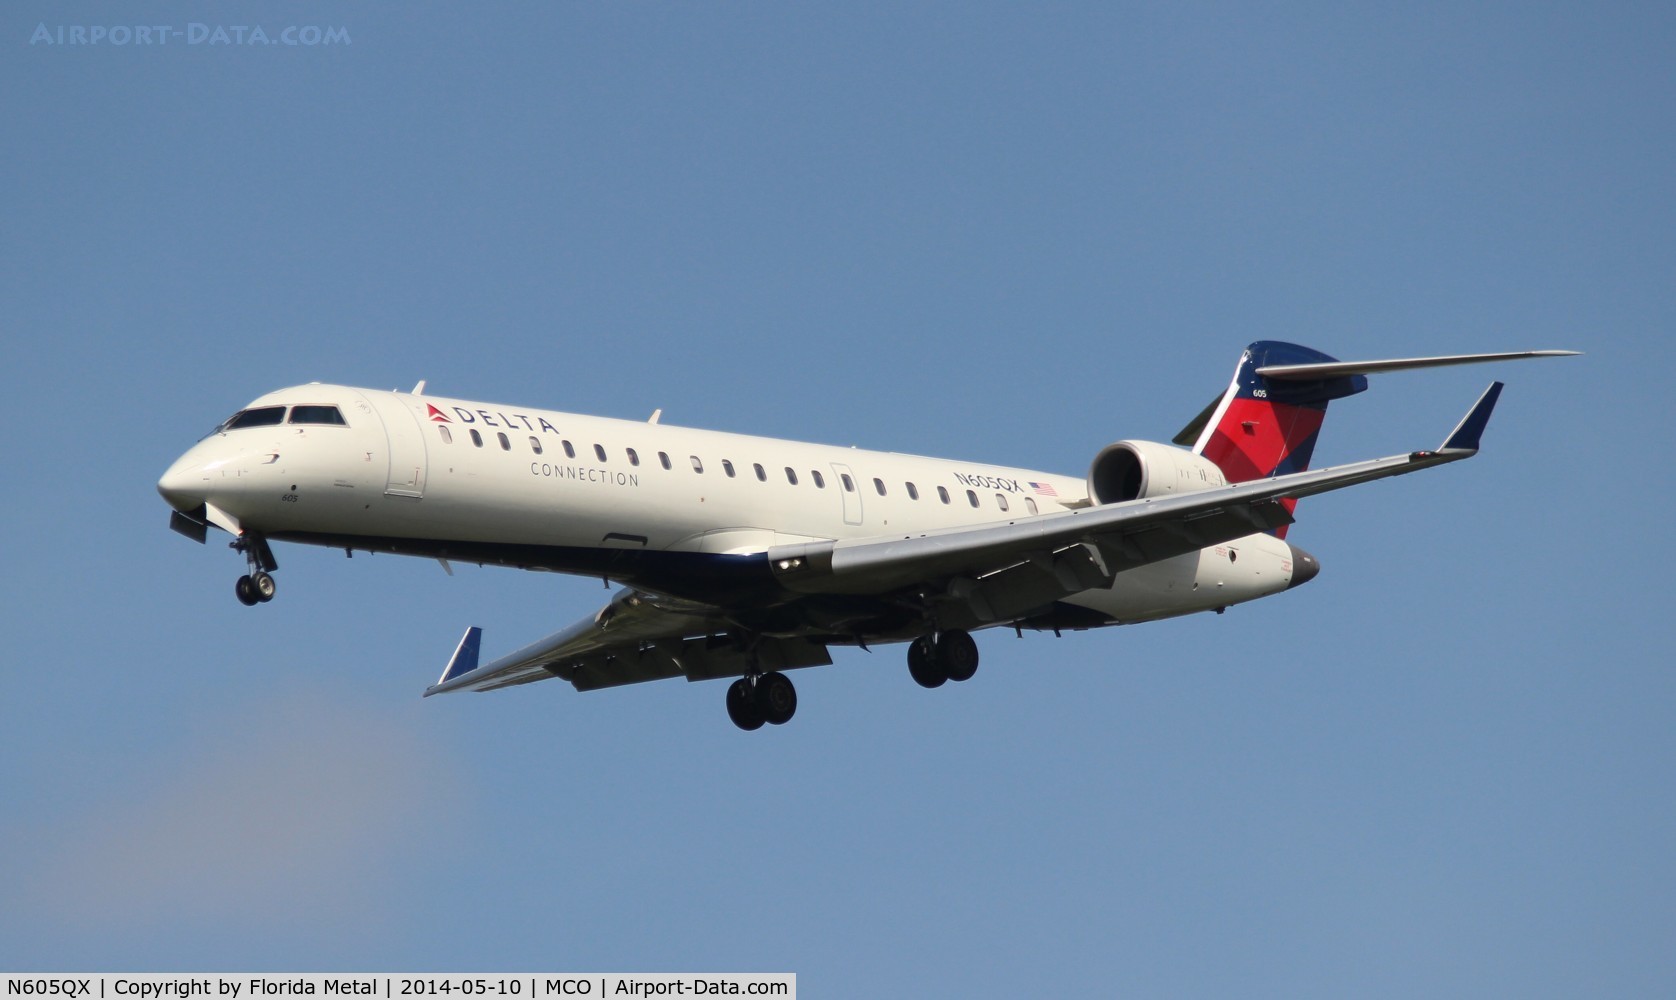 N605QX, 2002 Bombardier CRJ-701 (CL-600-2C10) Regional Jet C/N 10022, Delta Connection